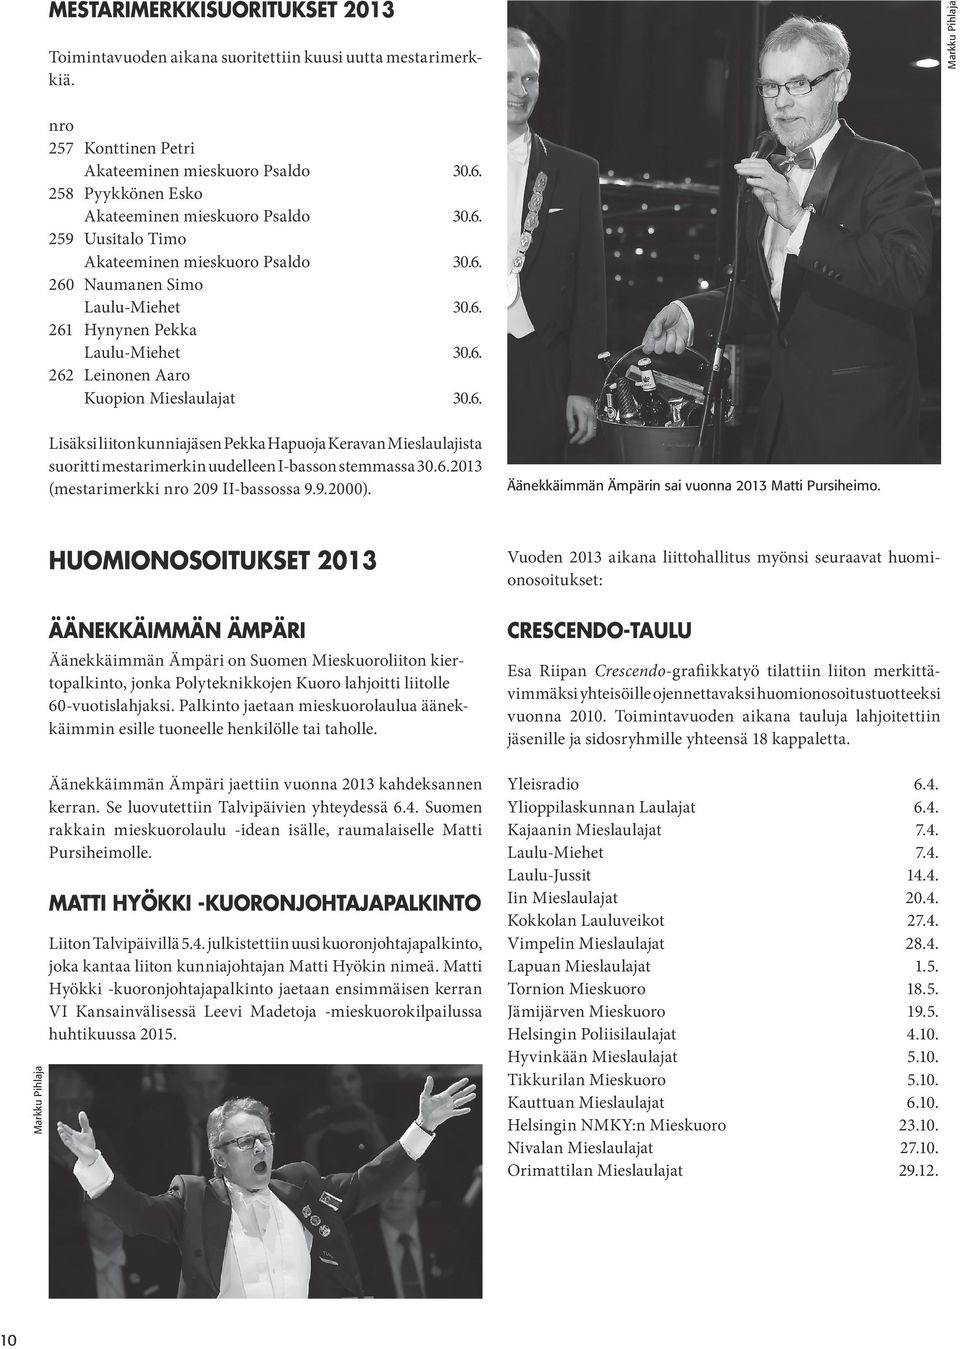 6. Lisäksi liiton kunniajäsen Pekka Hapuoja Keravan Mieslaulajista suoritti mestarimerkin uudelleen I-basson stemmassa 30.6.2013 (mestarimerkki nro 209 II-bassossa 9.9.2000).